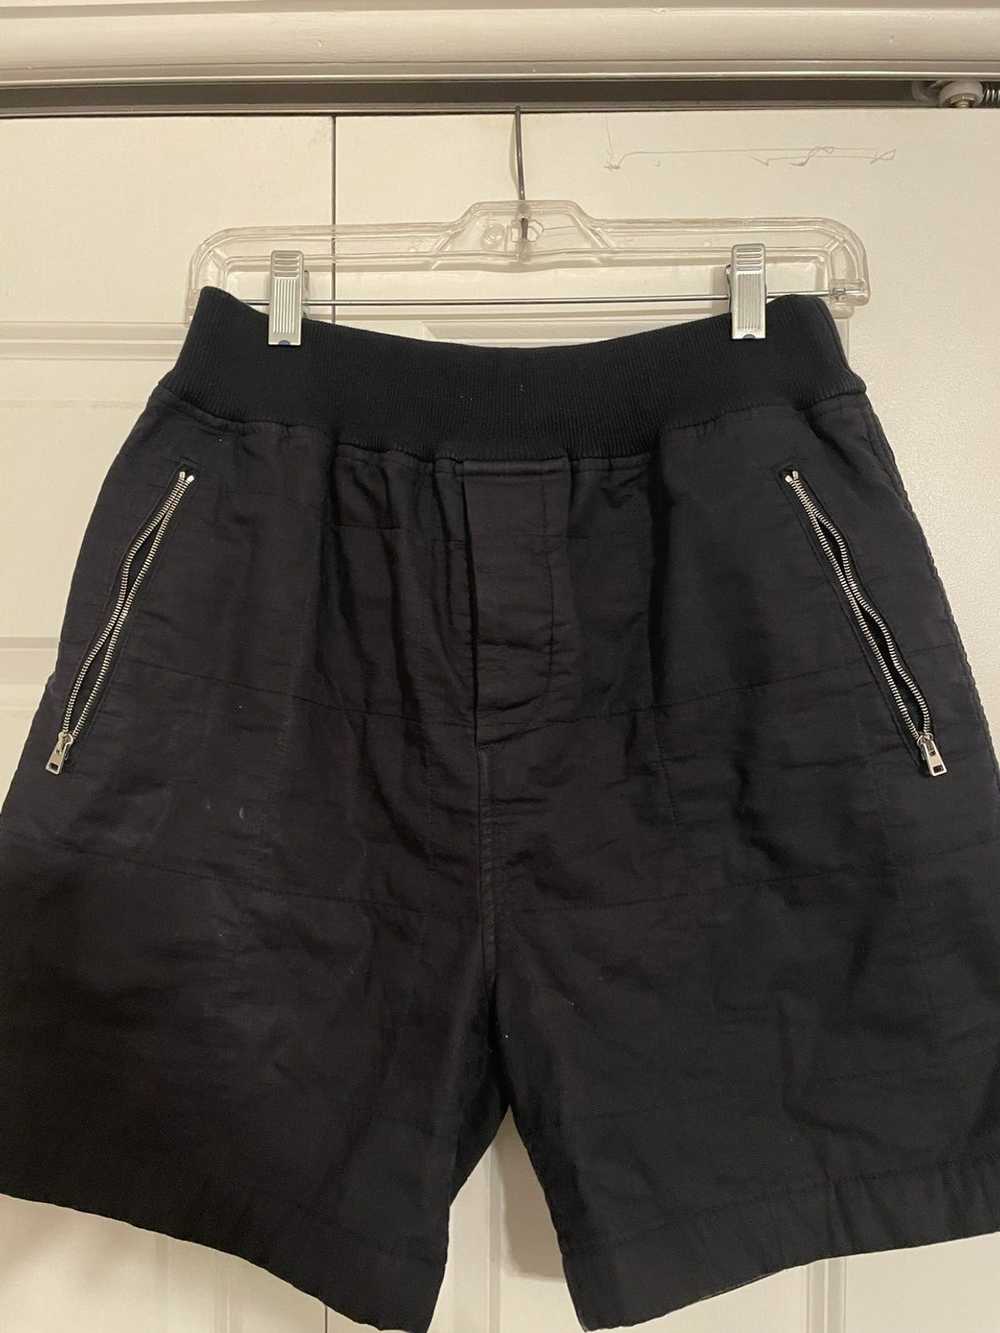 Marni Marni Quilted Shorts - image 2